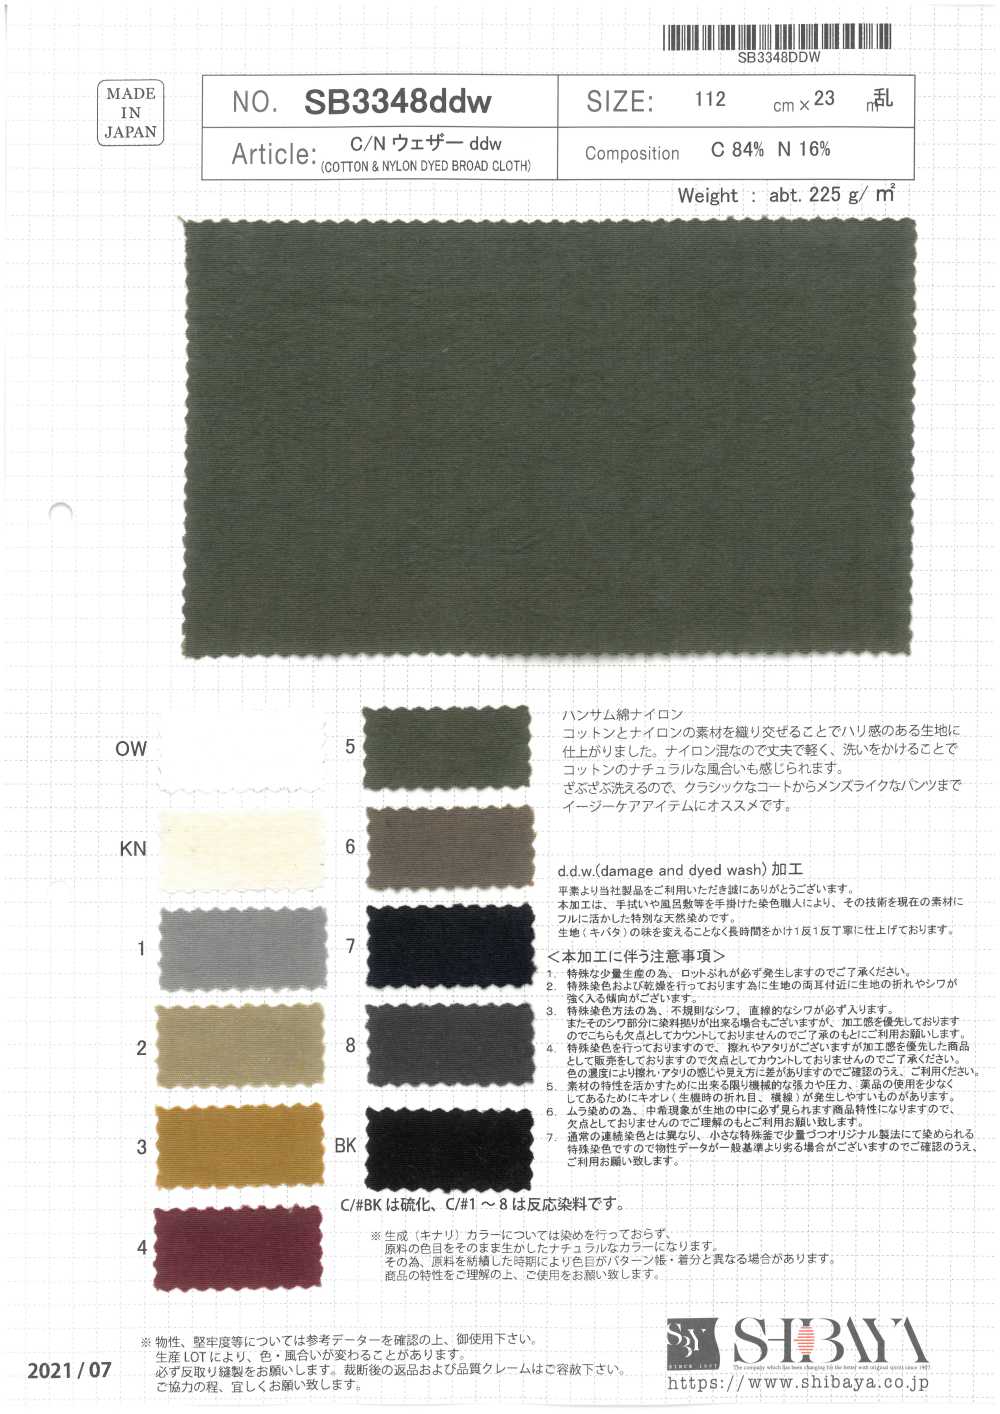 SB3348ddw Cotton / Nylon Weather Cloth Ddw[Textile / Fabric] SHIBAYA